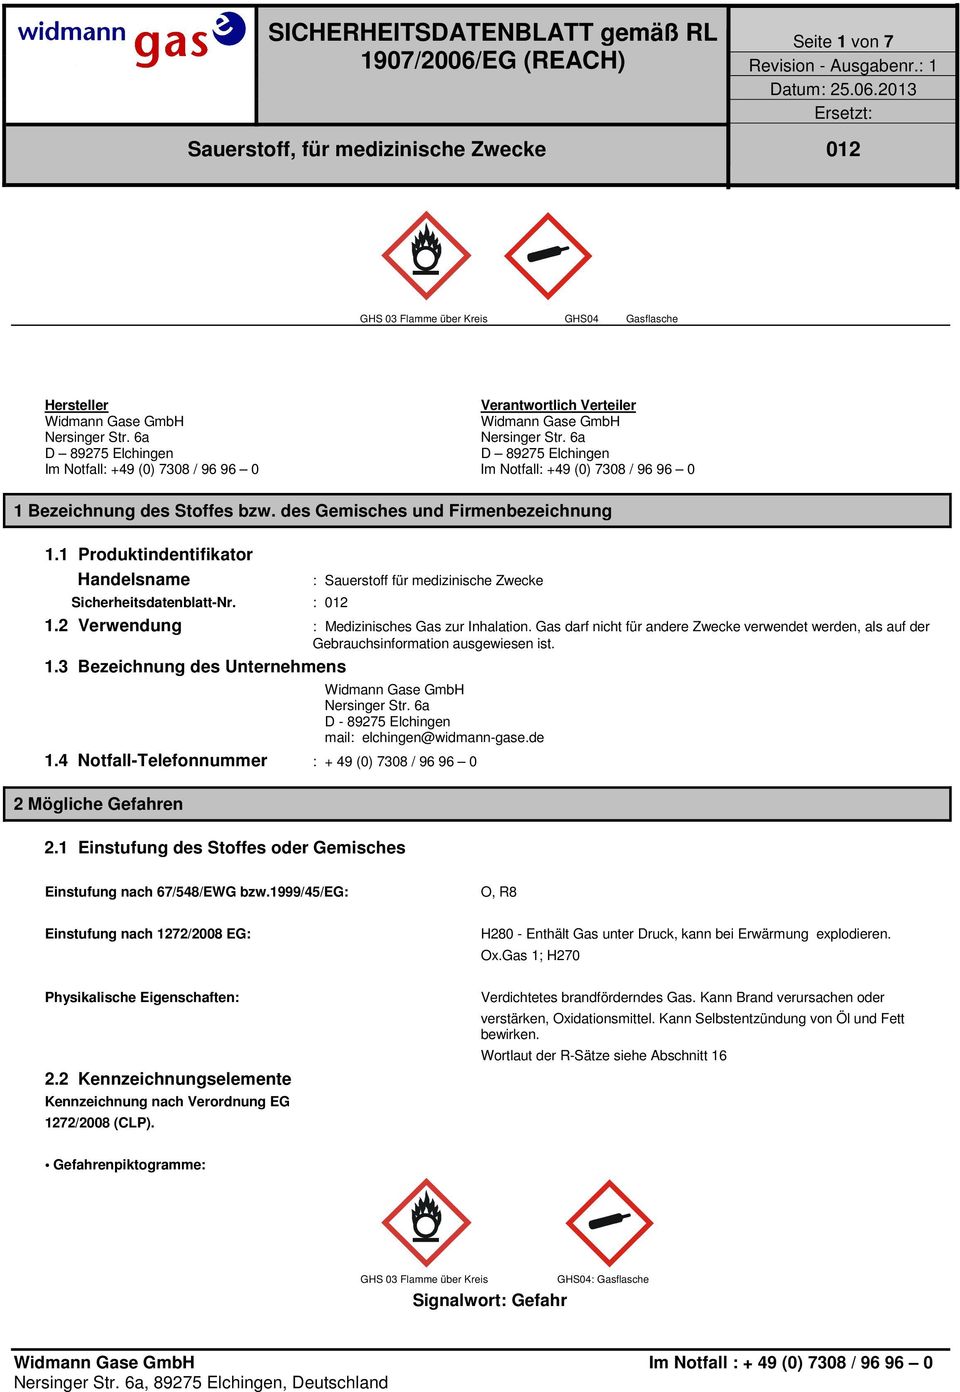 1 Produktindentifikator Handelsname Sicherheitsdatenblatt-Nr. : 012 : Sauerstoff für medizinische Zwecke 1.2 Verwendung : Medizinisches Gas zur Inhalation.